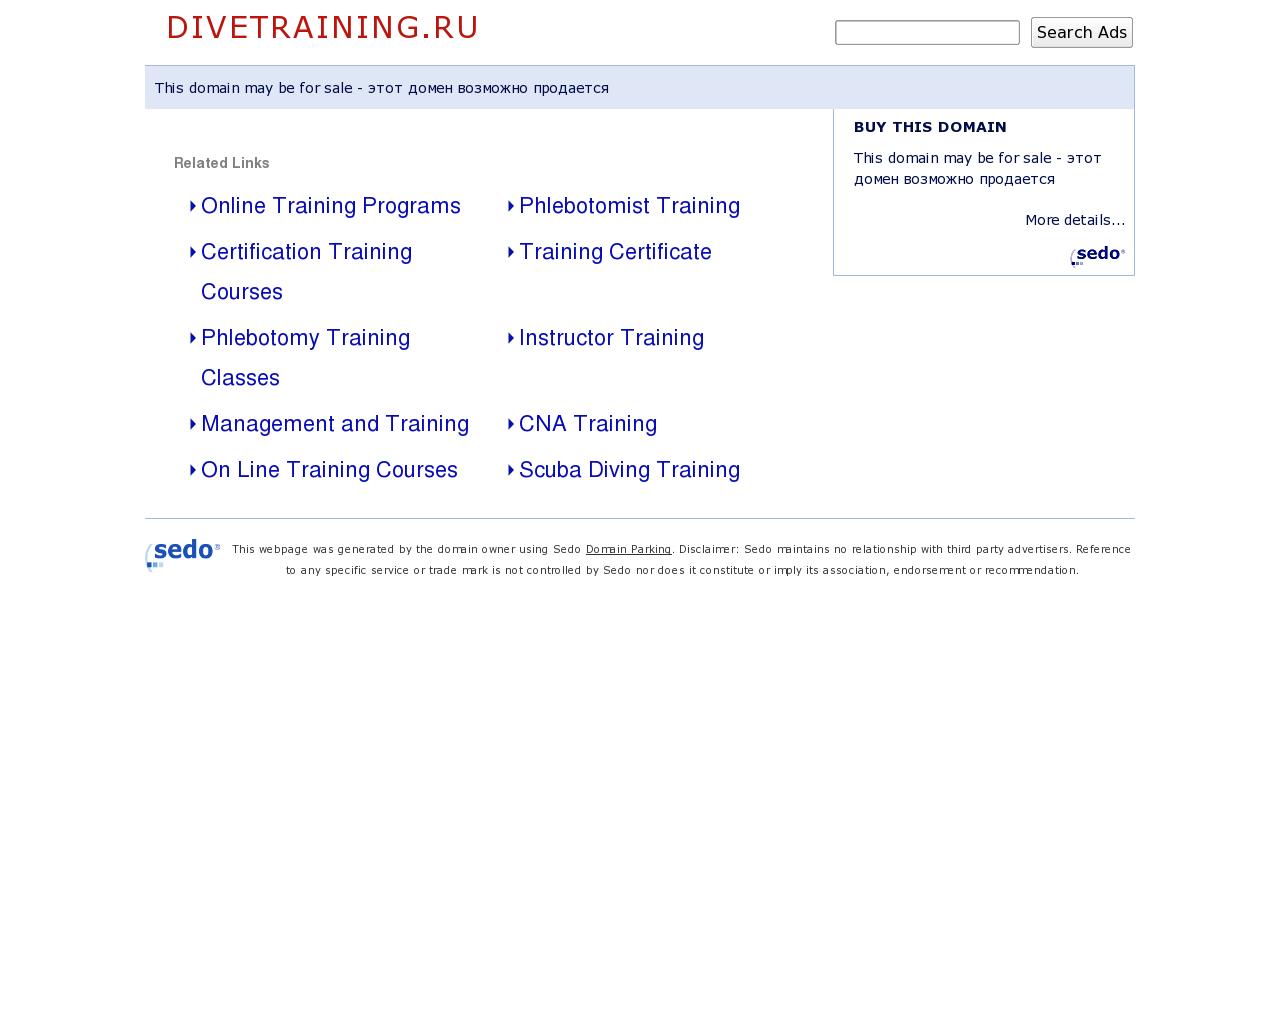 Изображение сайта divetraining.ru в разрешении 1280x1024